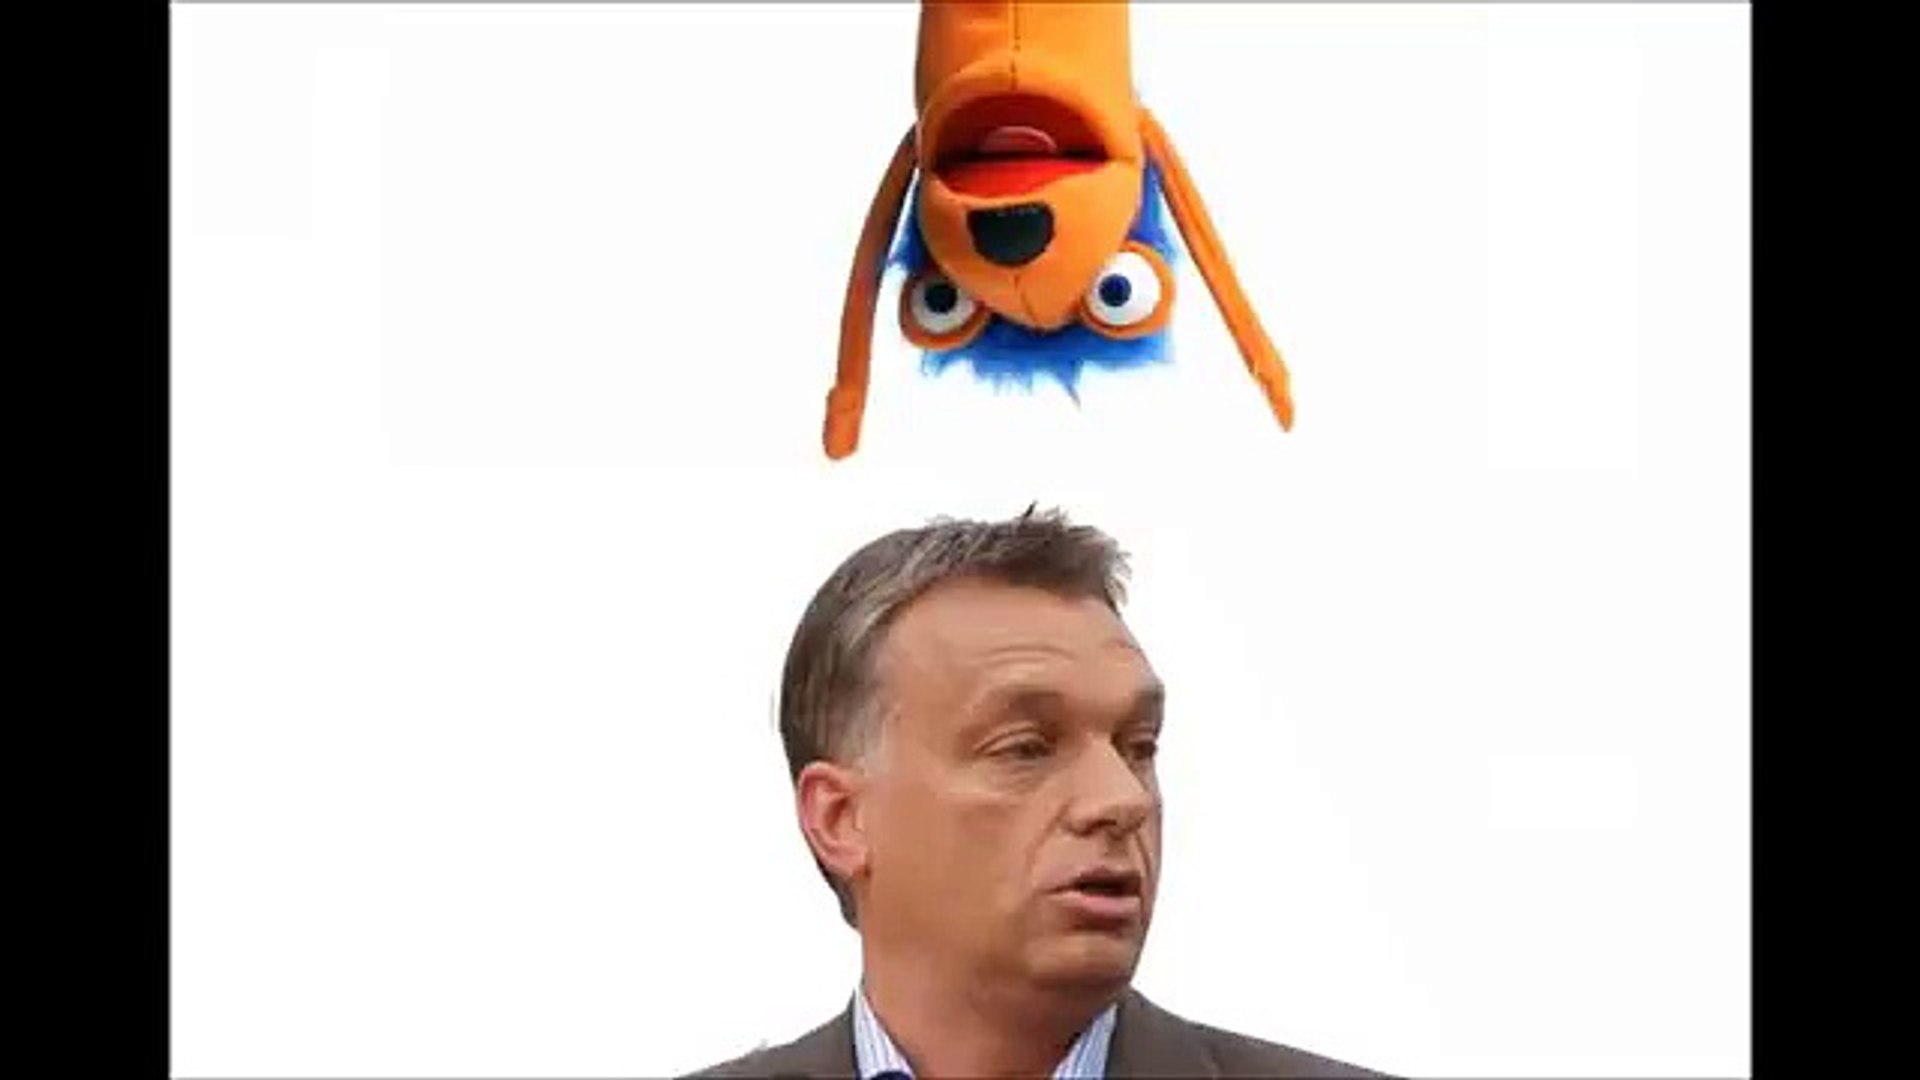 Orbán Viktor fidesz paródia - Jófogás.hu / választás 2014